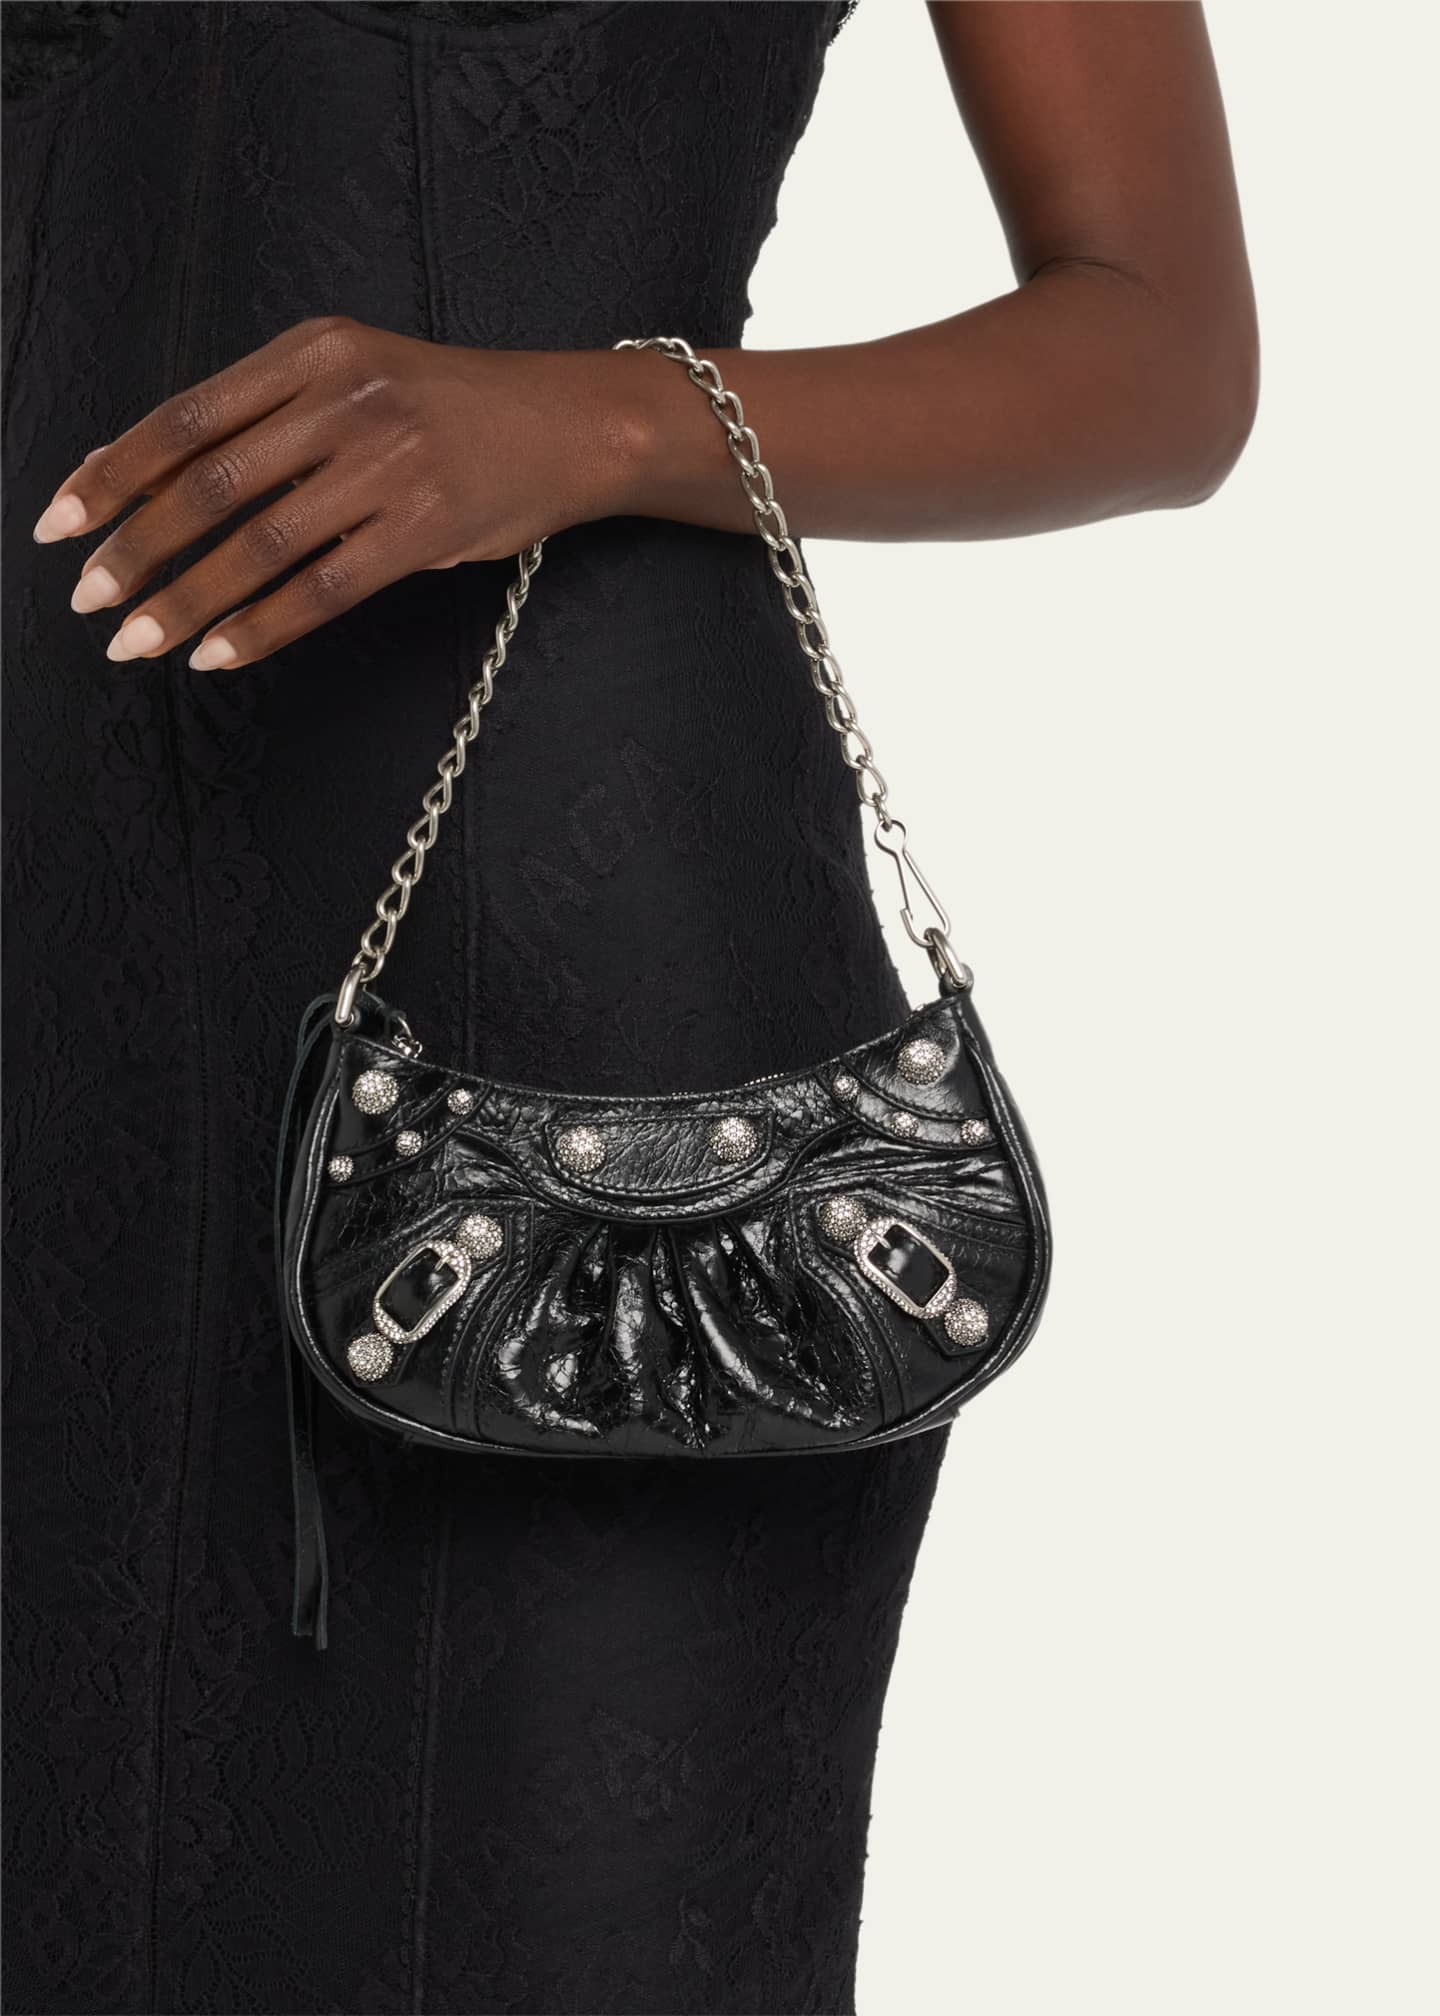 Le Cagole M Bag - Balenciaga - Leather - Black